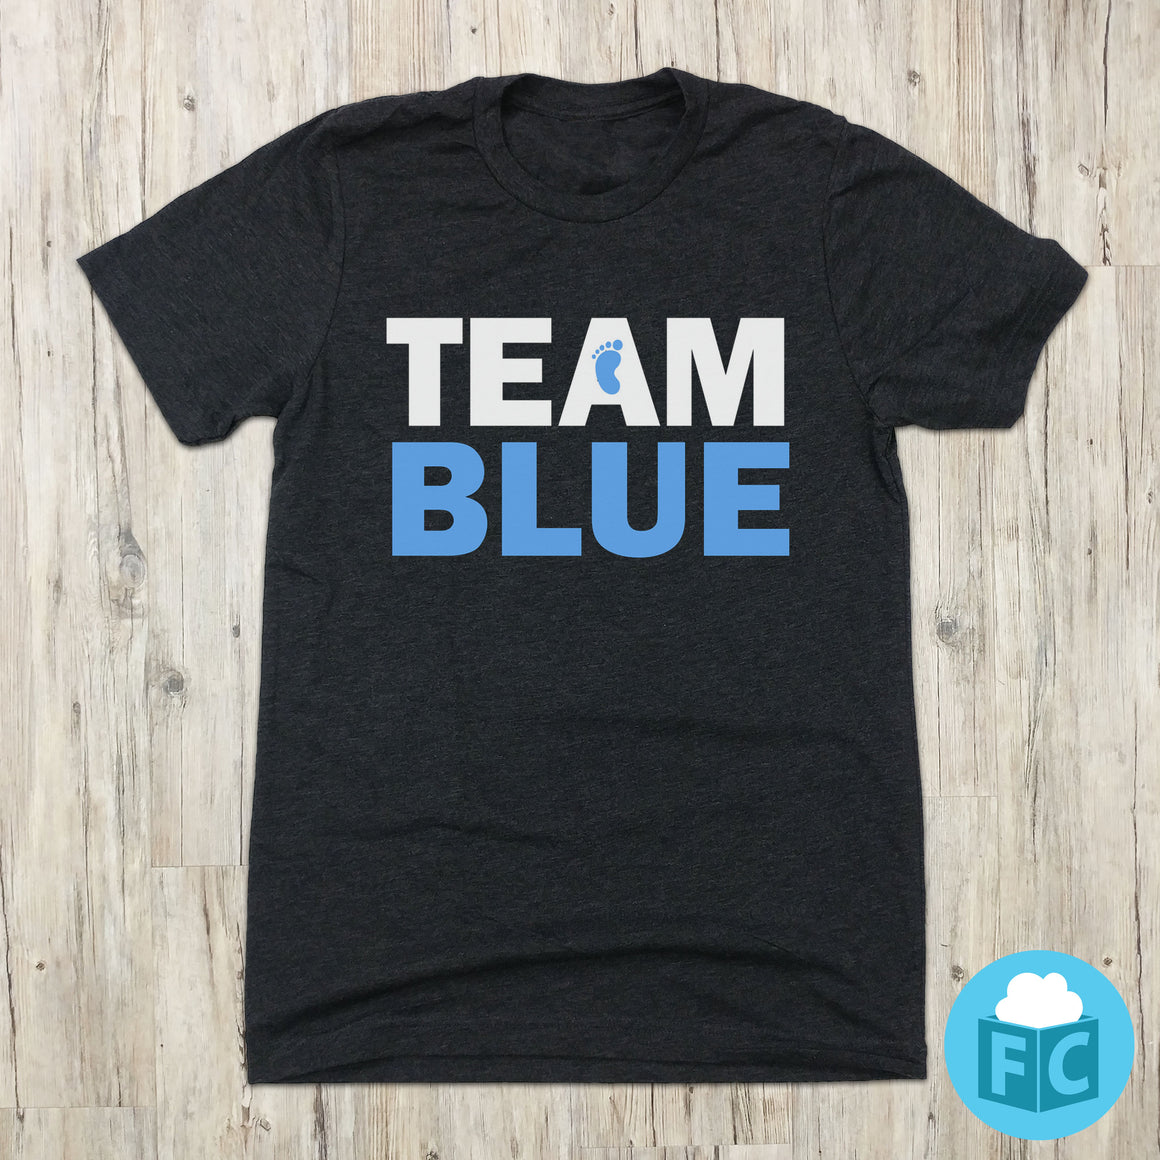 Team Blue - Gender Reveal Tee